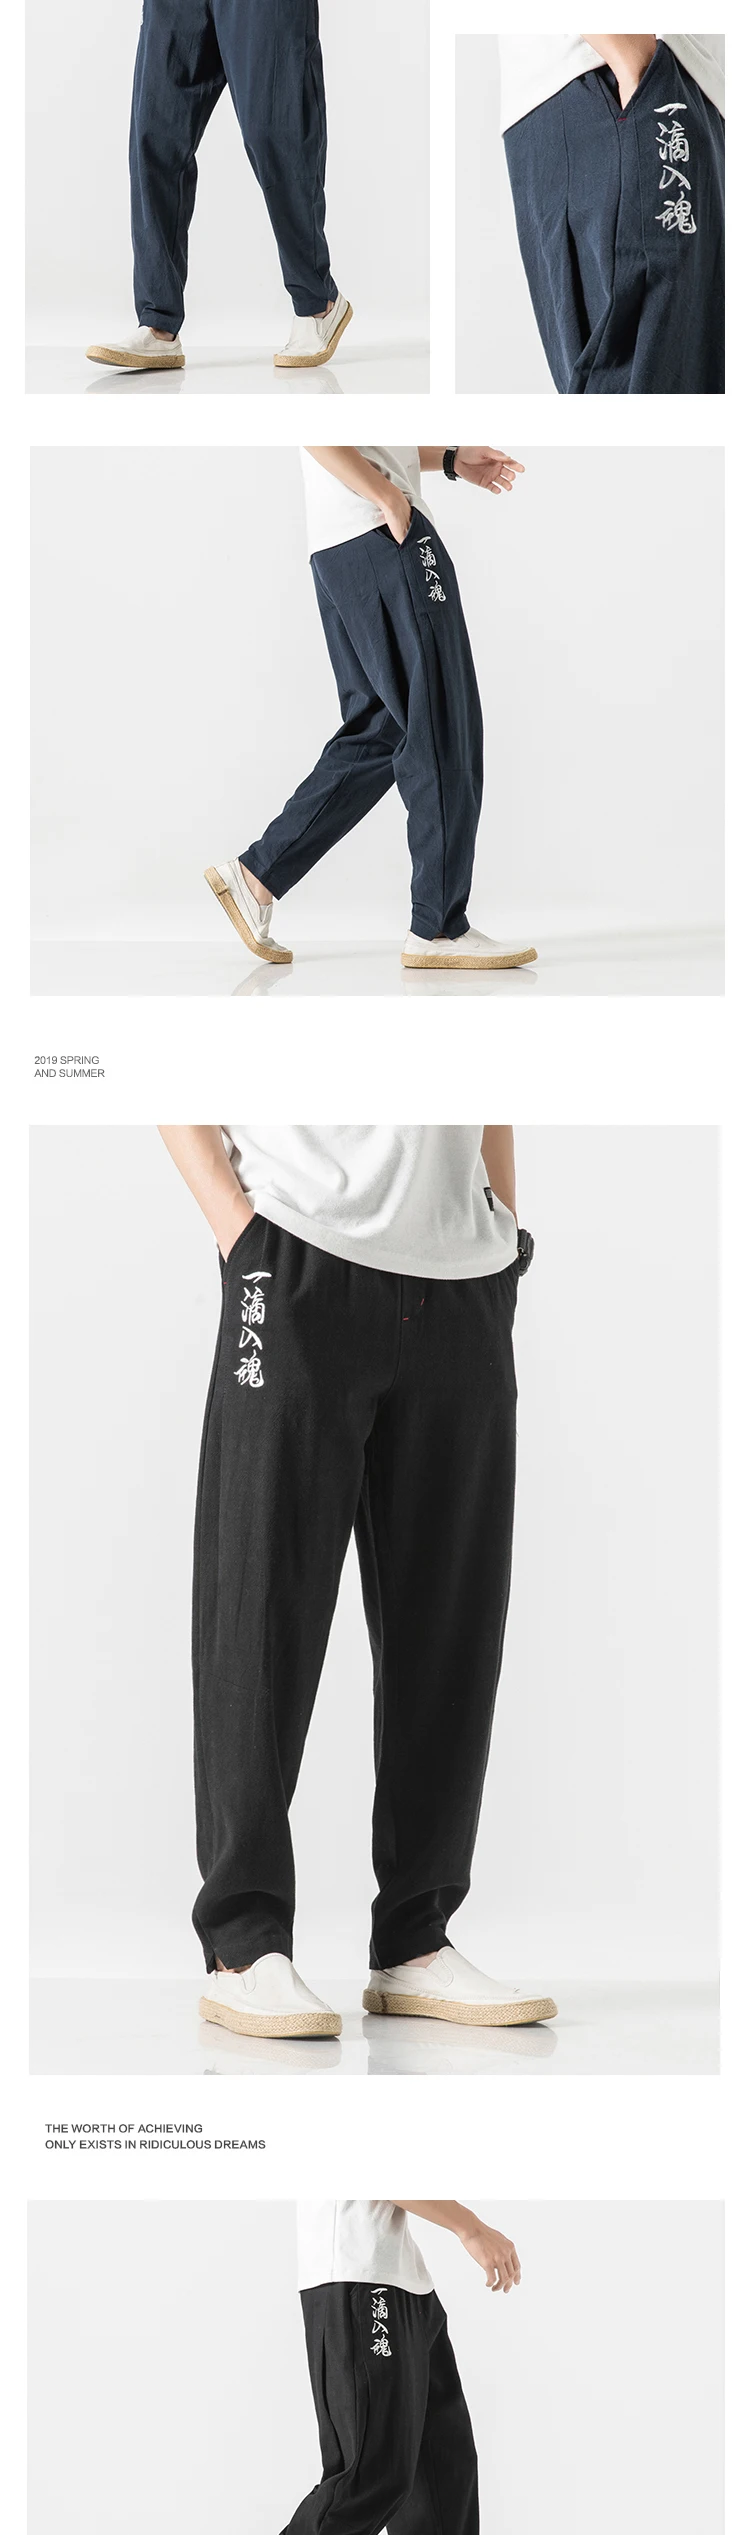 2019 летние мужские брюки-шаровары, льняные хлопковые брюки до щиколотки, свободные мужские джоггеры, широкие брюки, повседневные штаны